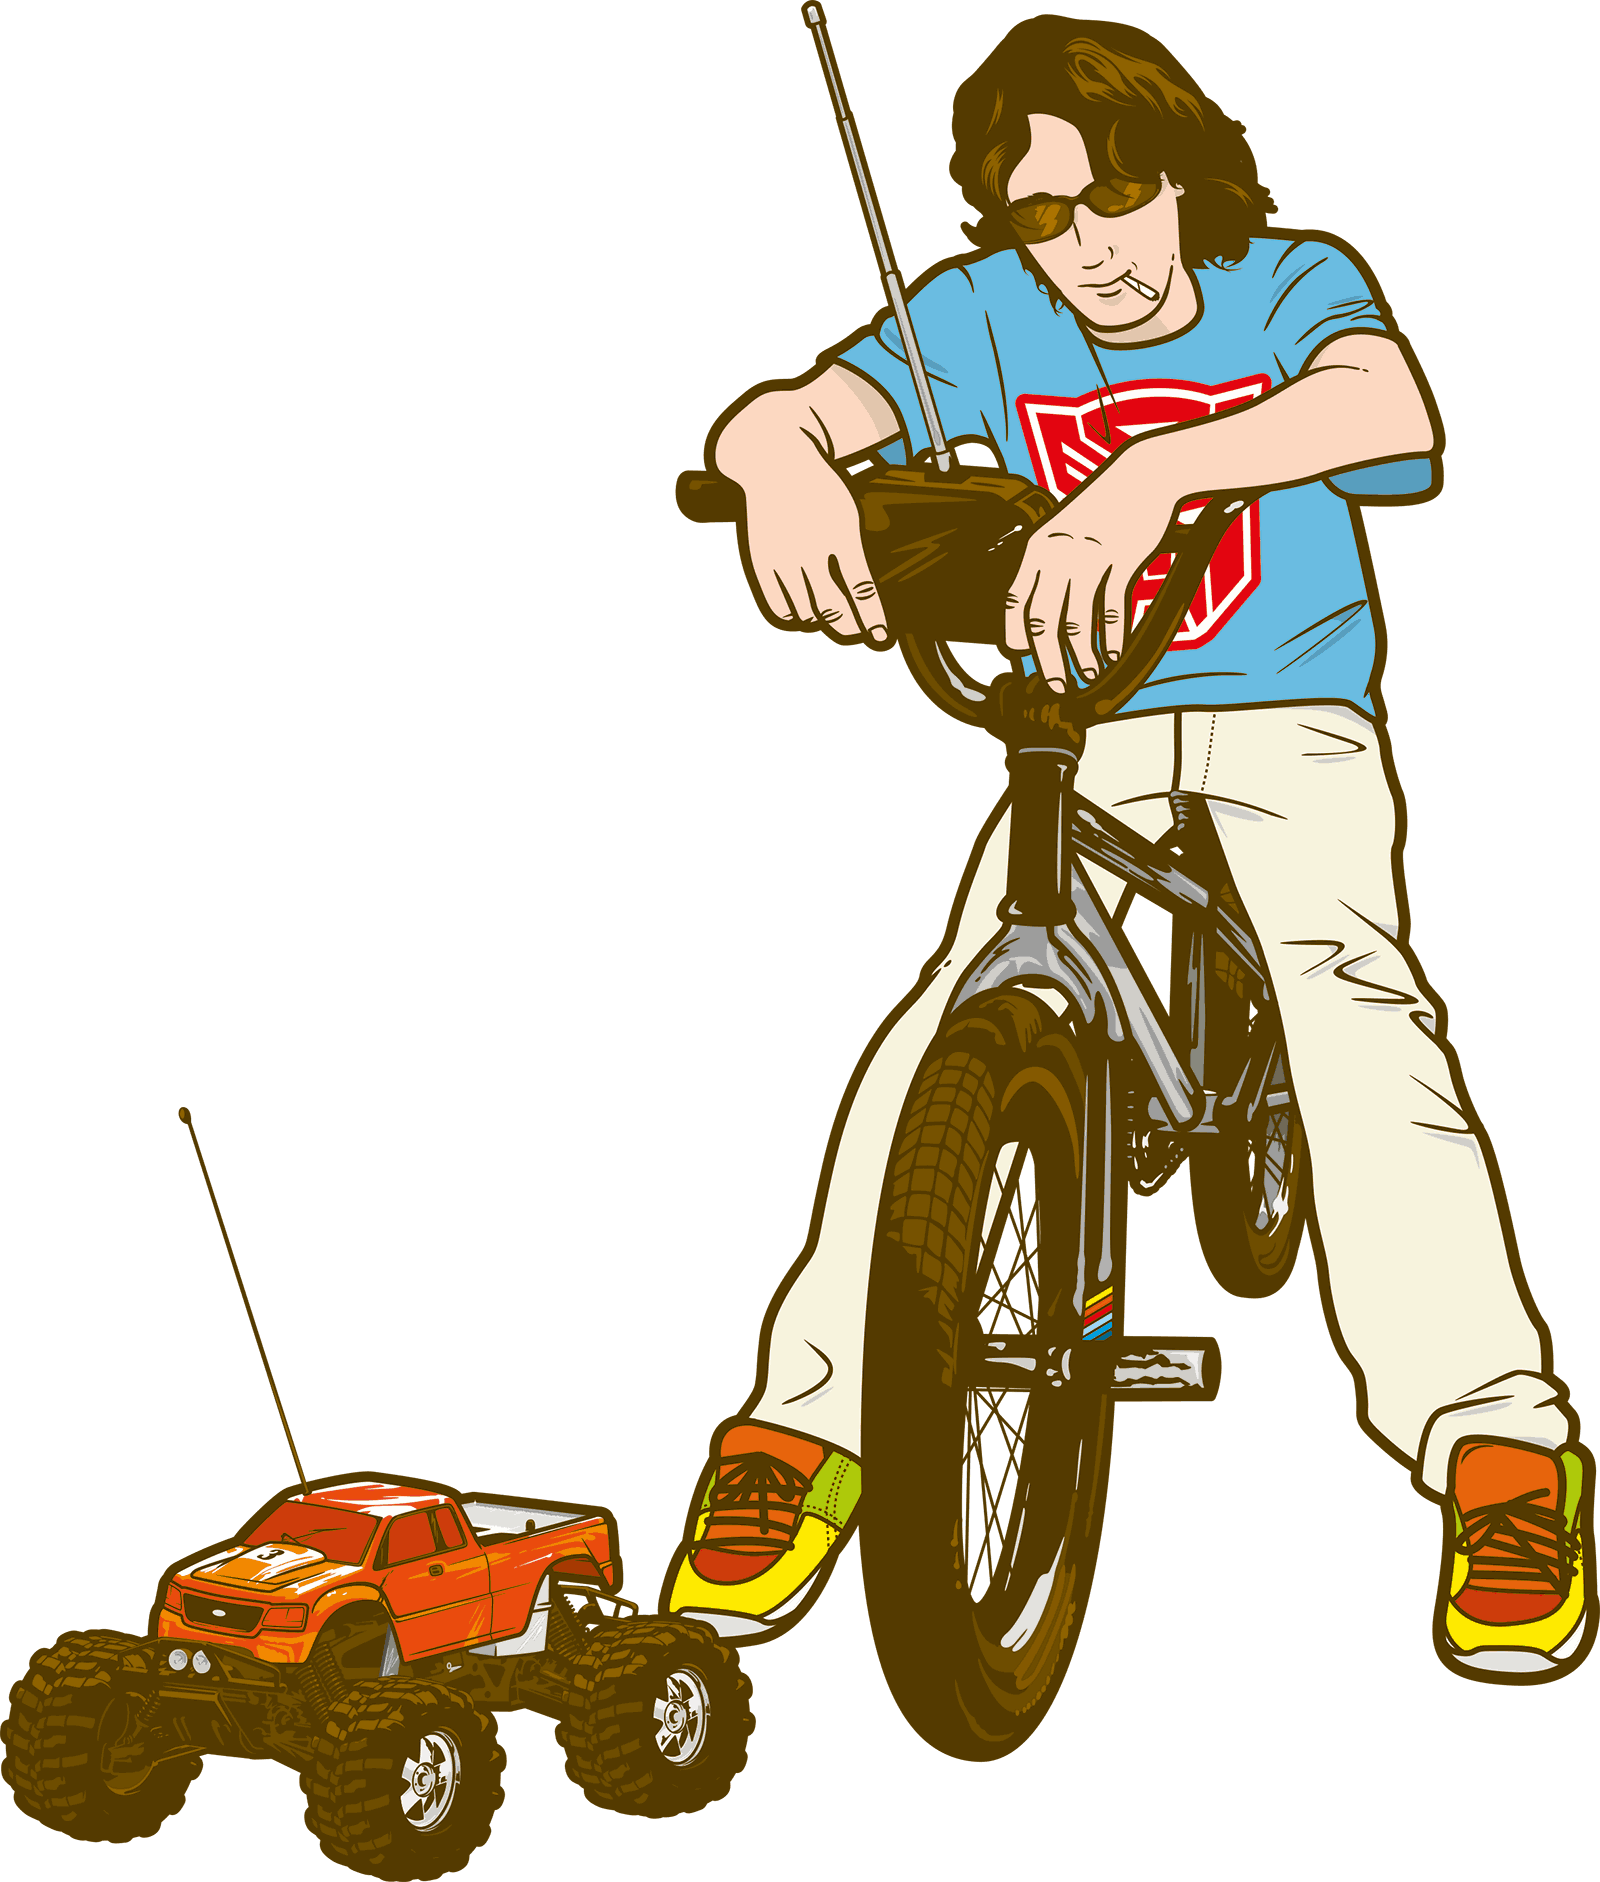 Illustration of a boy on a bike